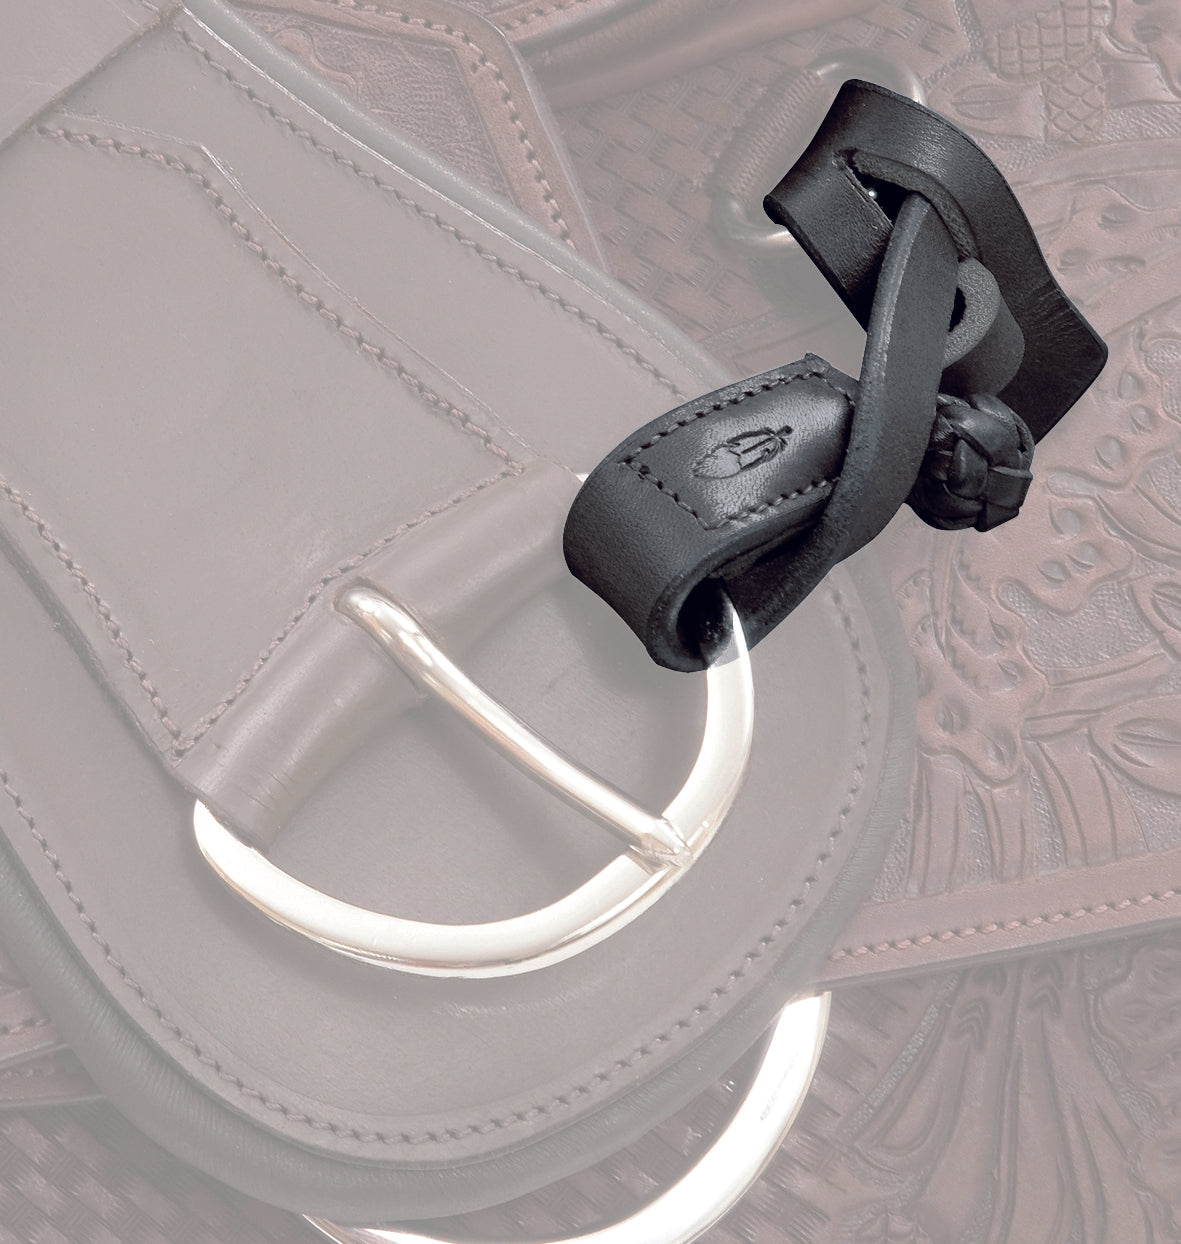 Leather holder - Stirrup Holder strap strap 